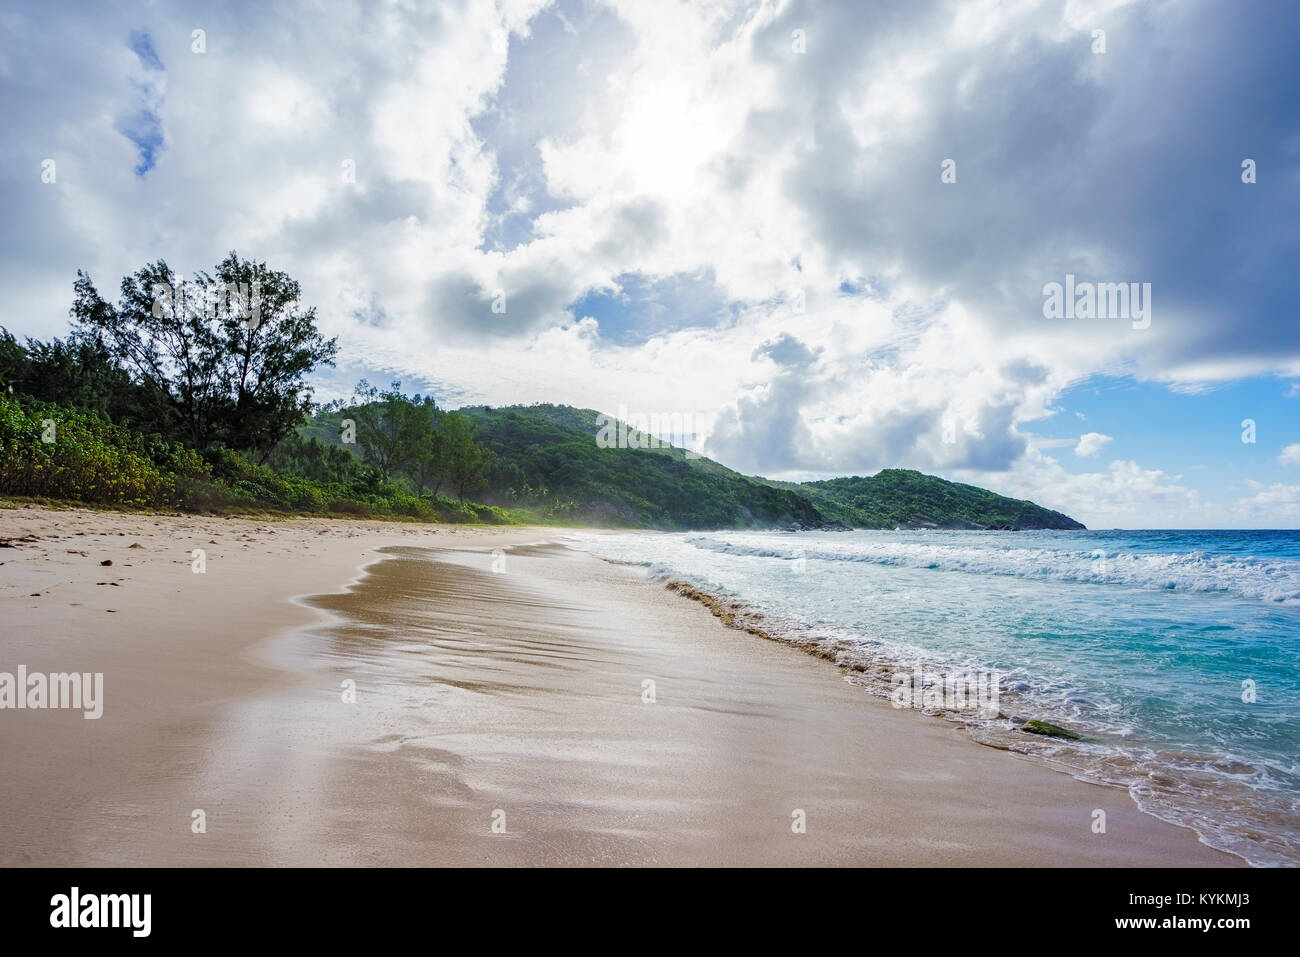 Wild Tropischer Strand mit Palmen in einem Dschungel, Sand und eine rauhe See an der Polizei Bay auf den Seychellen an einem bewölkten Tag Stockfoto